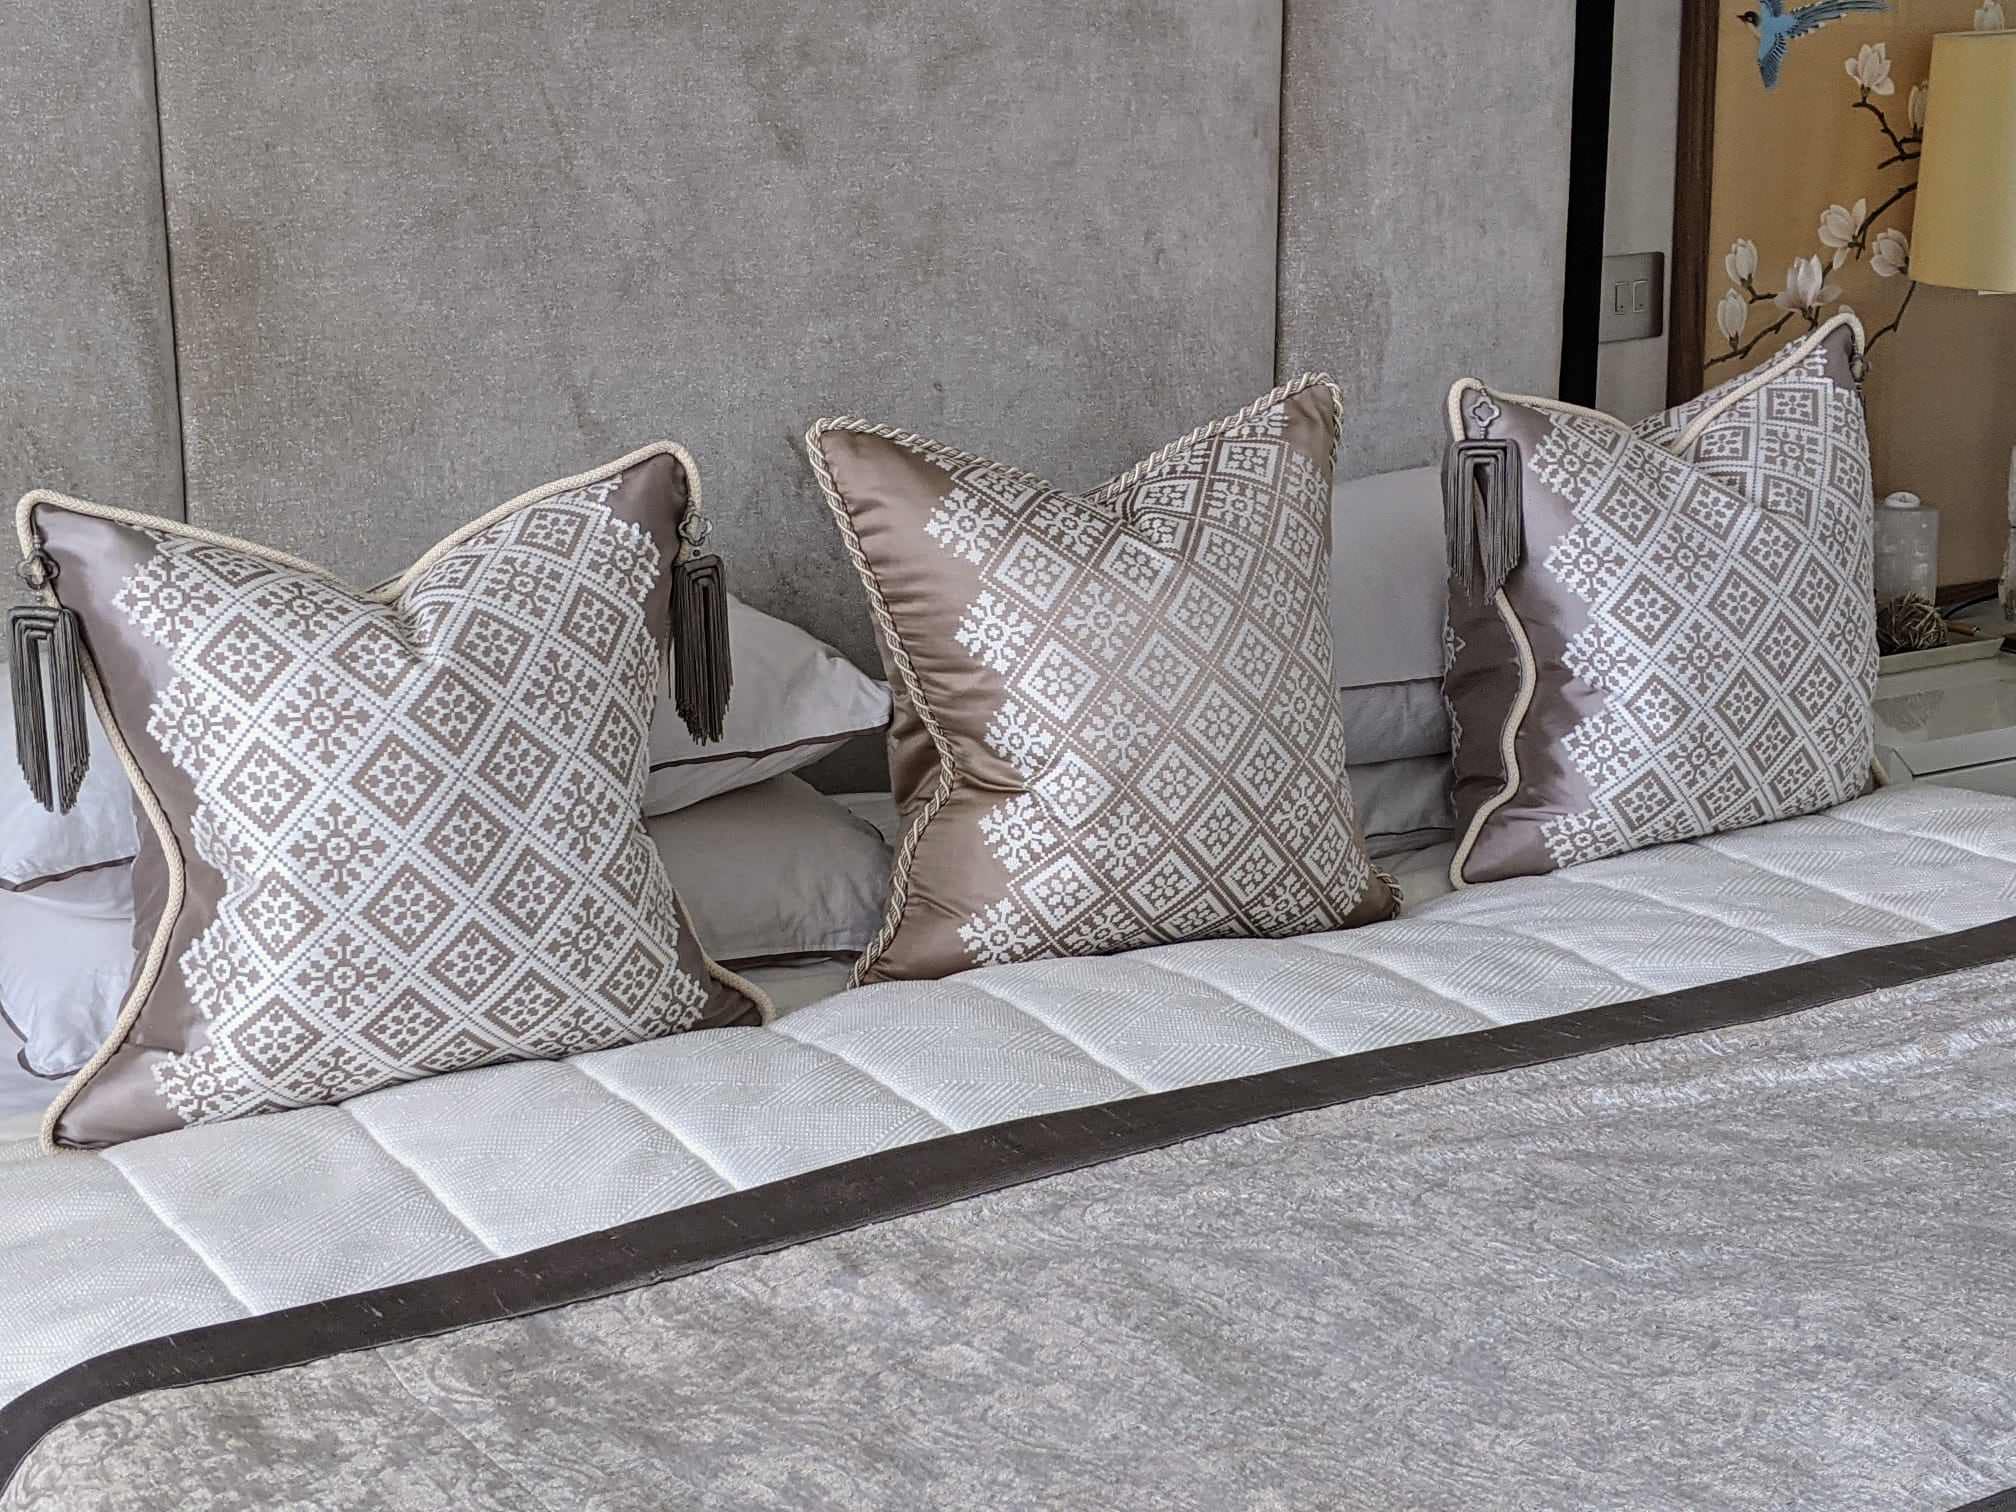 Bespoke Larsen cushions